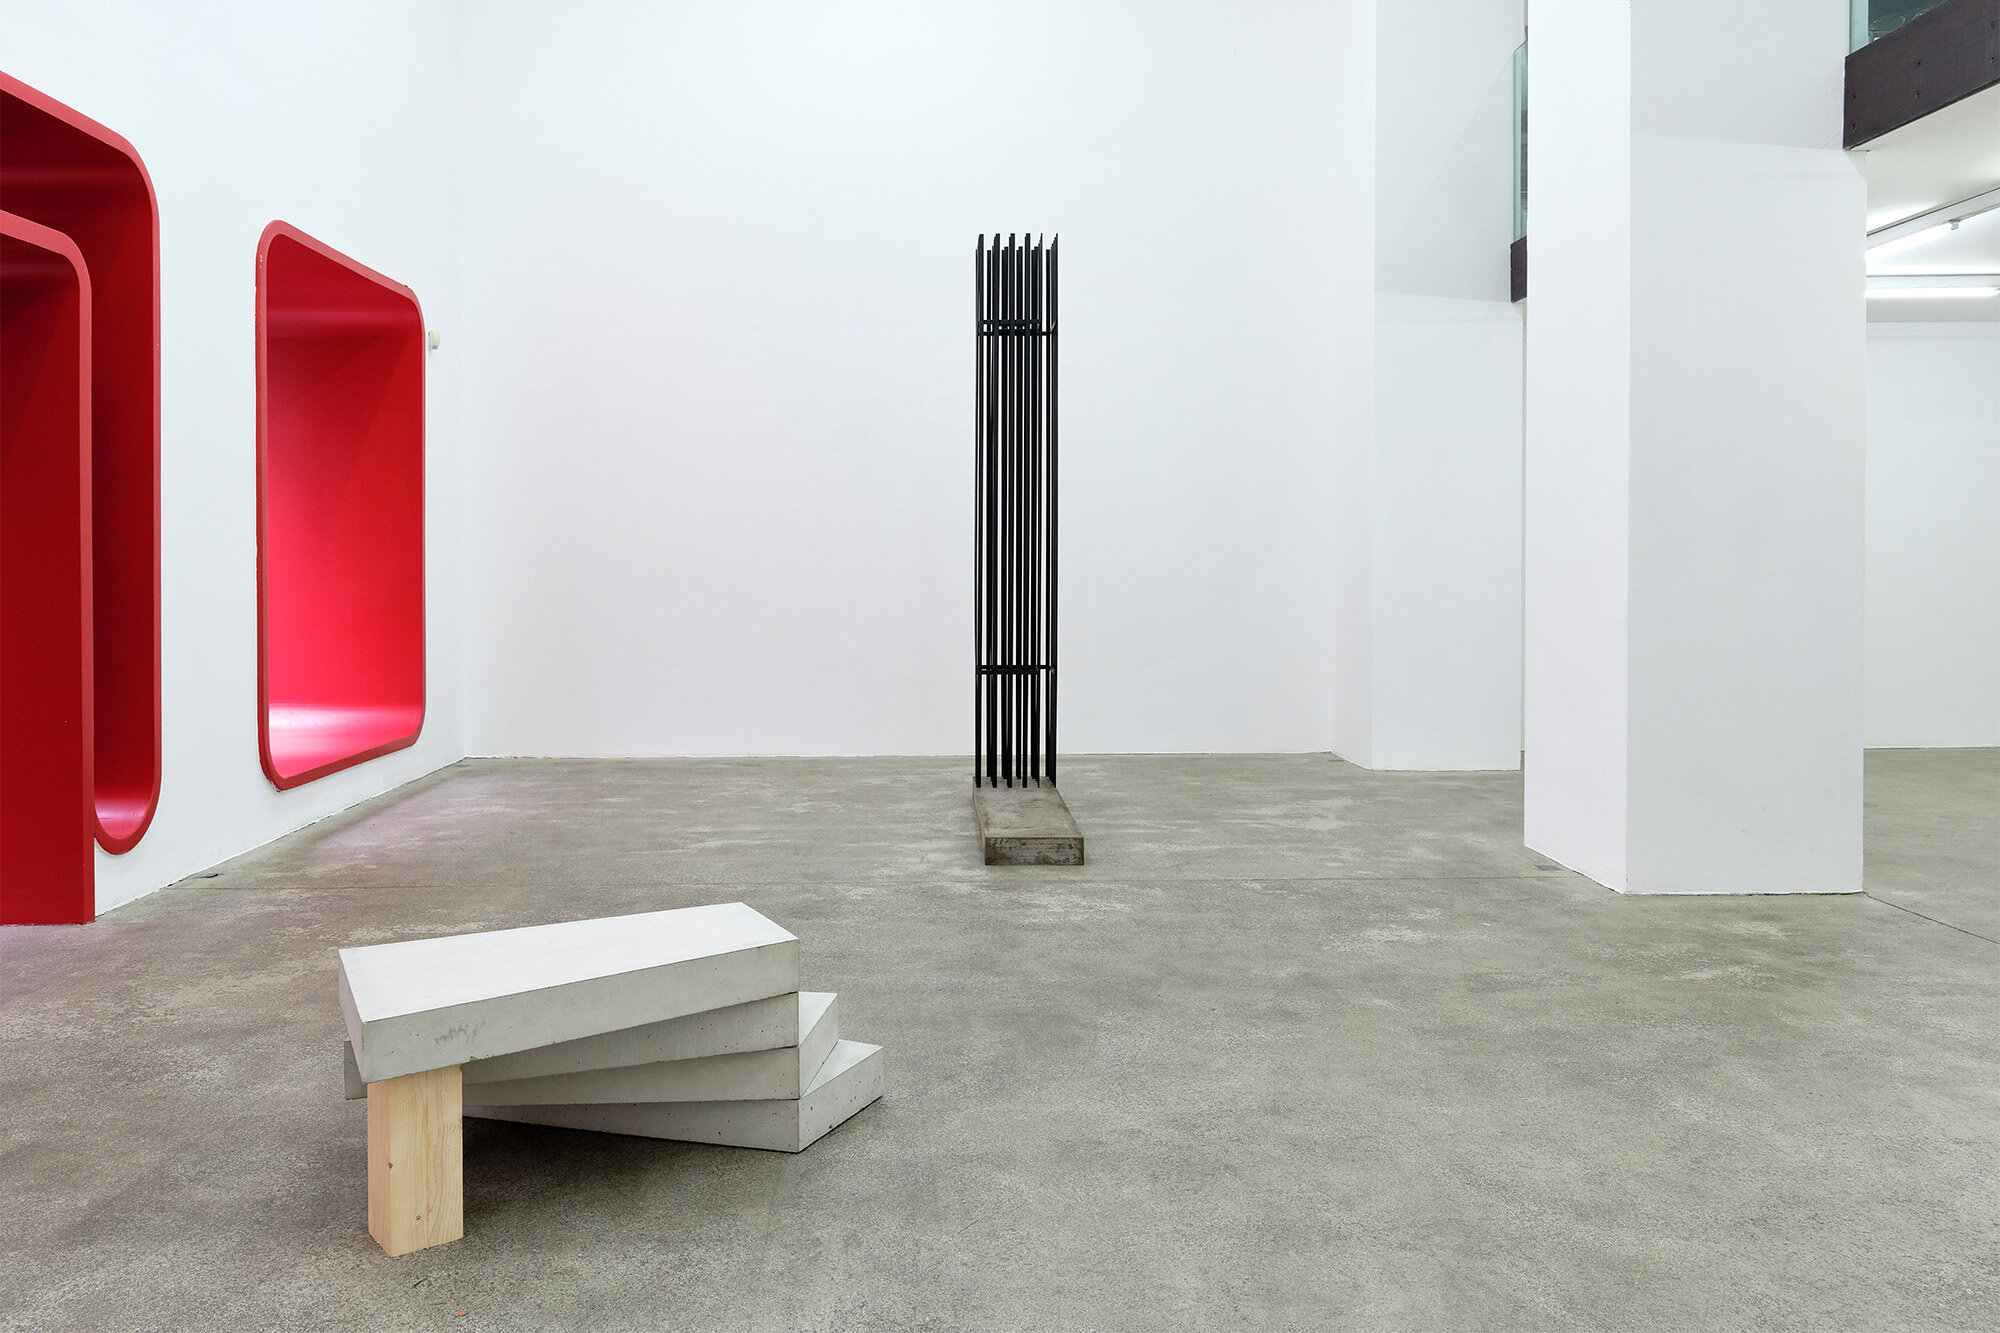 Galerie+Johann+Widauer-Exhibition-2020-Hubert-Kiecol-01.jpg